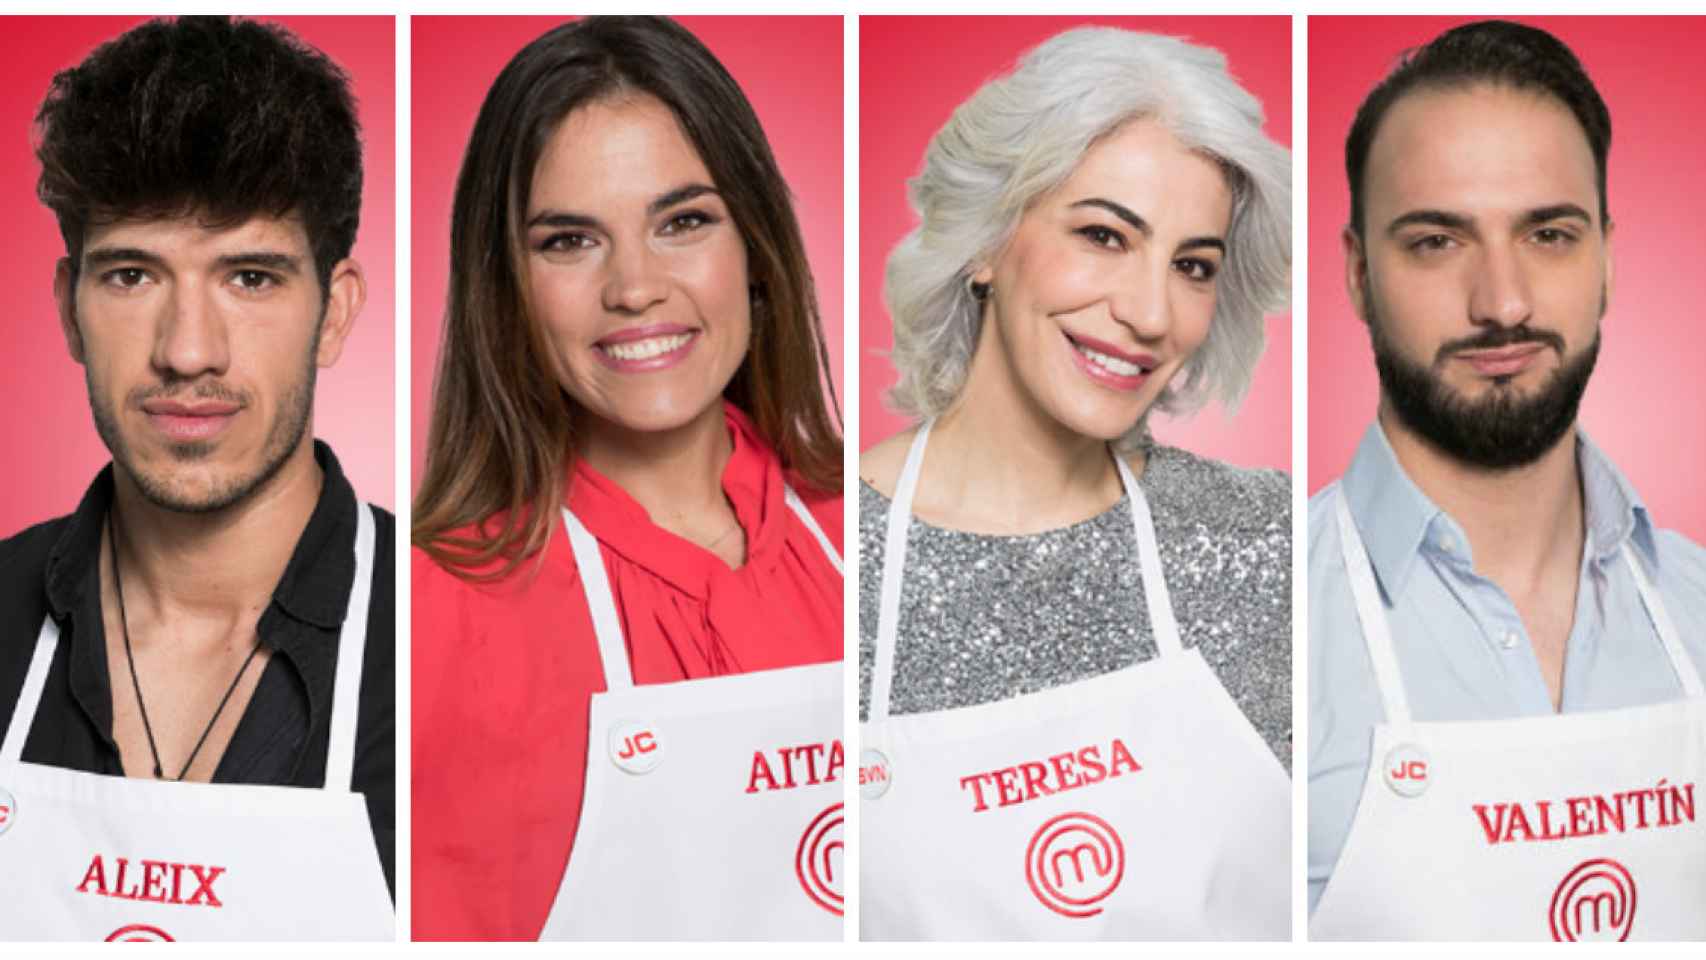 Los 4 finalistas de MasterChef: Aitana, Aleix, Teresa y Valentín